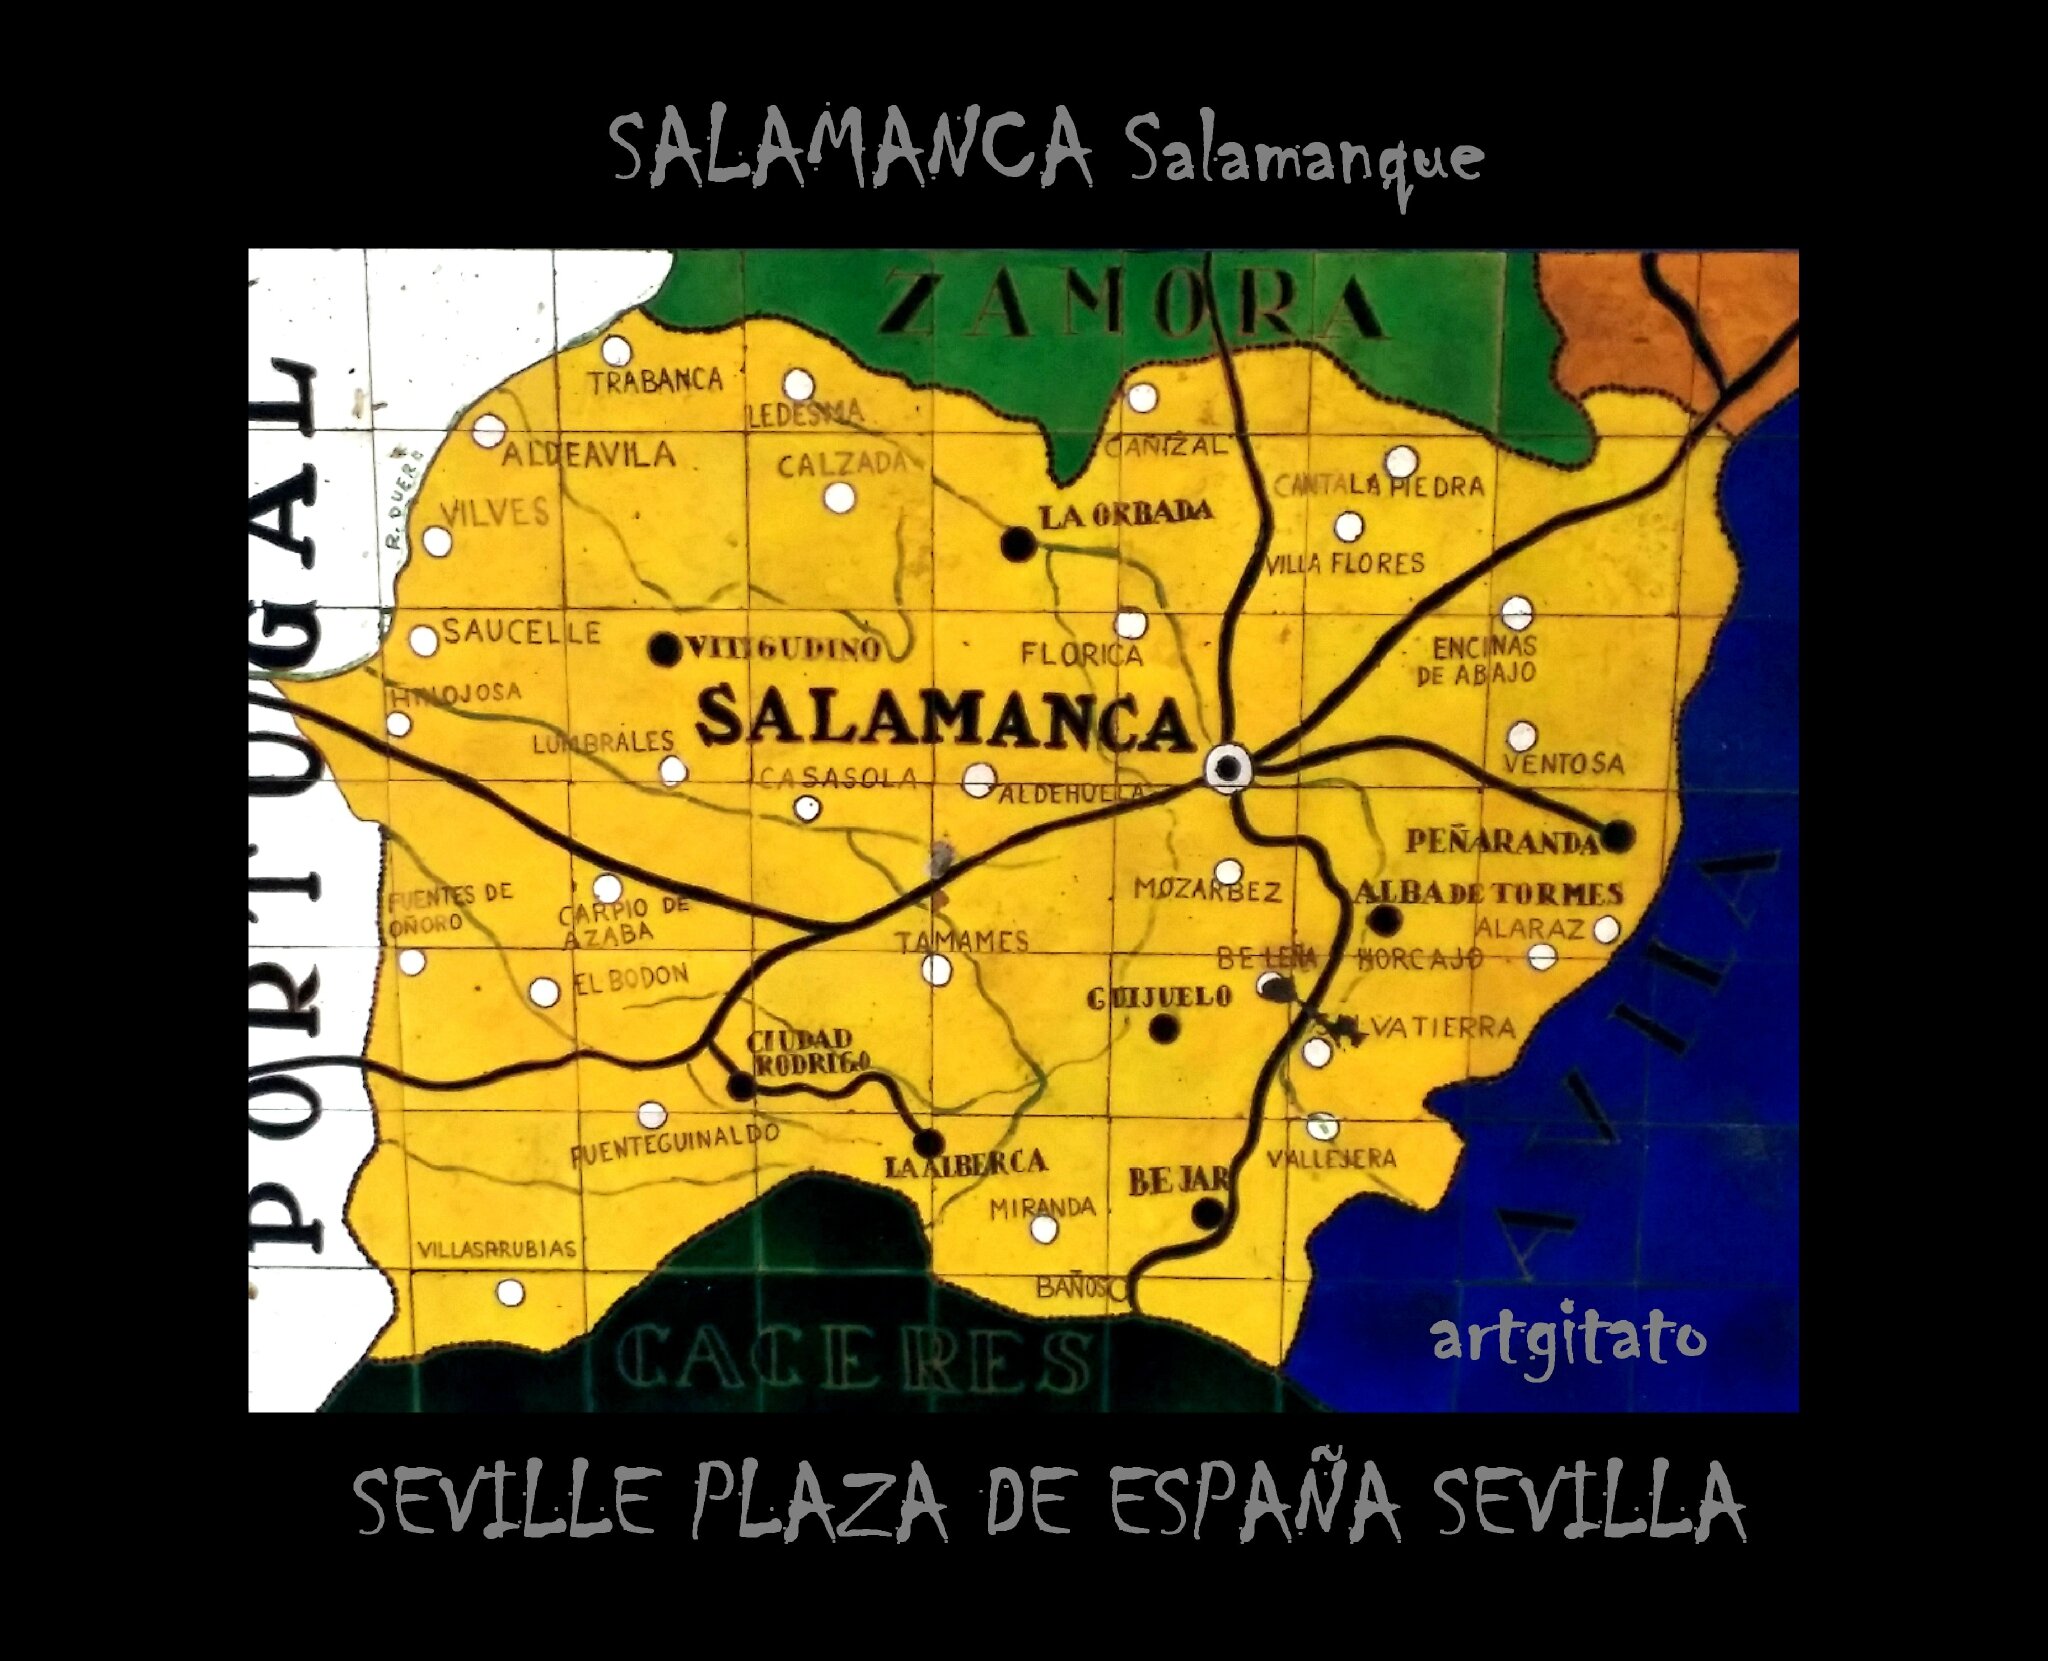 Salamanca Salamanque Sevilla Séville Artgitato Plaza de España